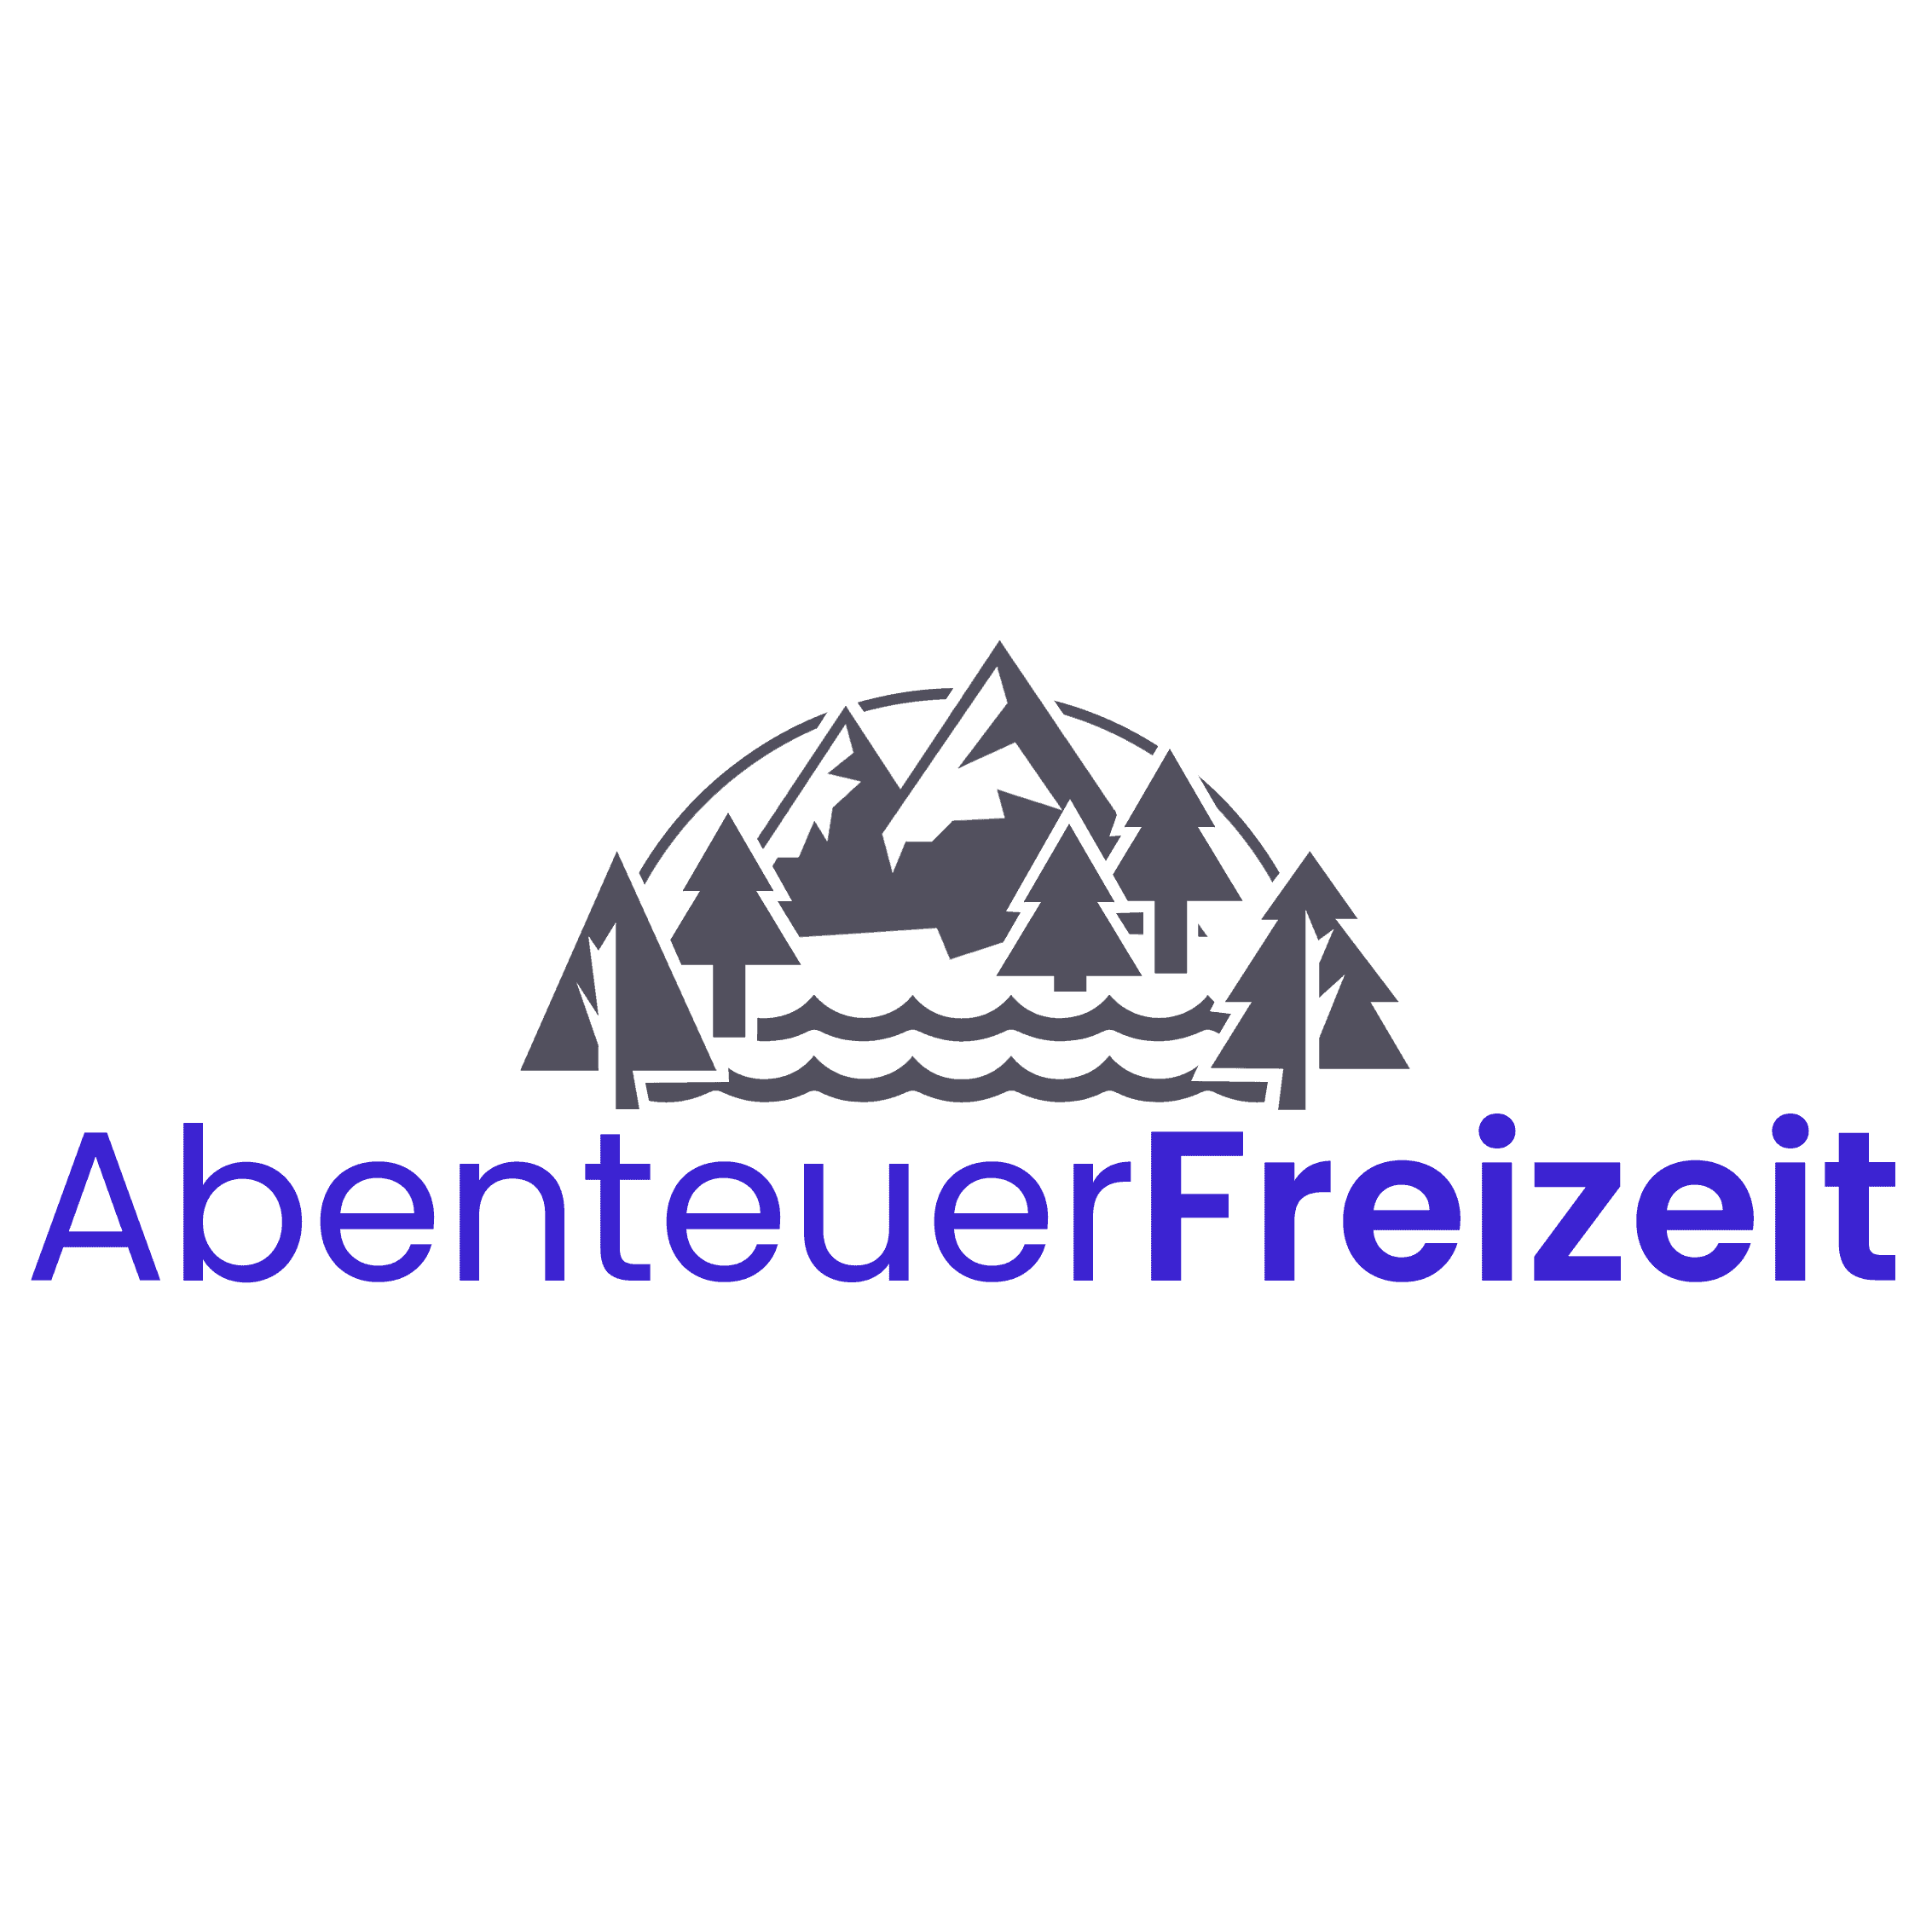 AbenteuerFreizeit - Aktivitäten, Ausflugsziele & Reisen Logo